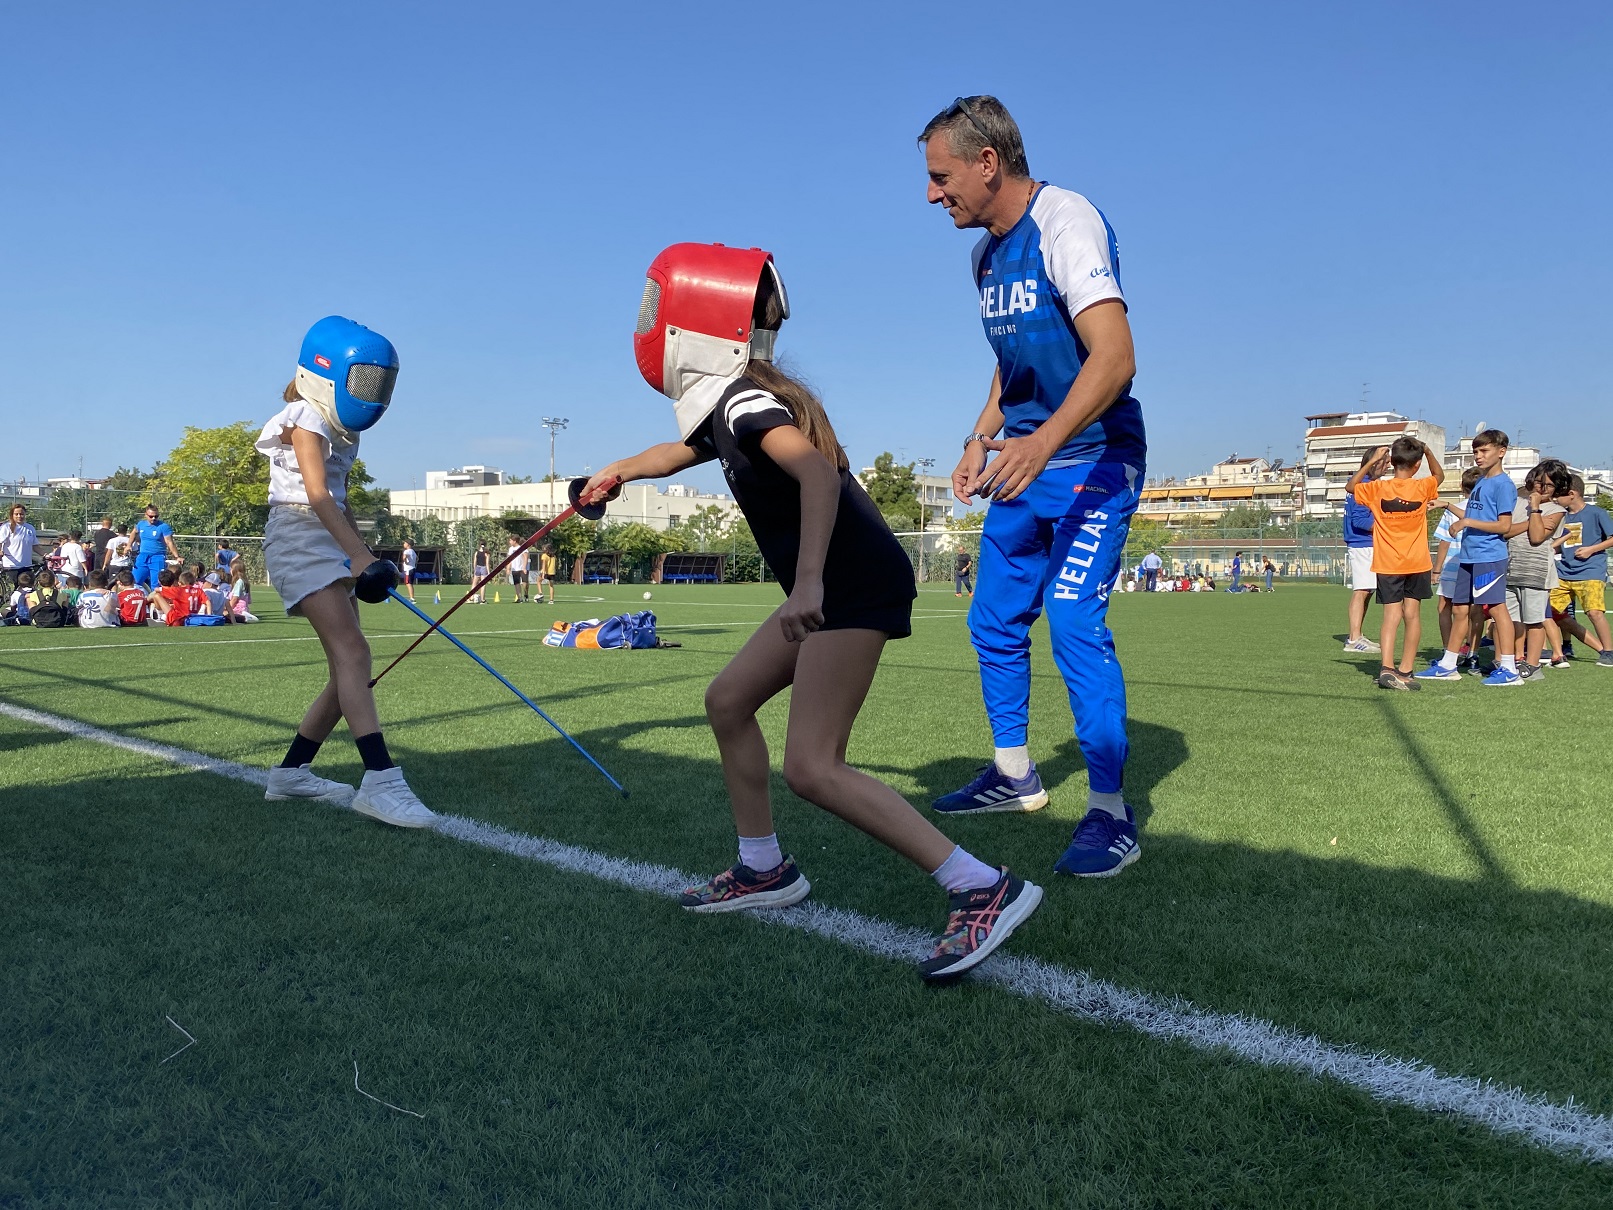 Πανελλήνια Ημέρα Σχολικού Αθλητισμού 2023: Τα σχολεία γιορτάζουν με κοινό σύνθημα "Η Κίνηση Δίνει Ζωή"